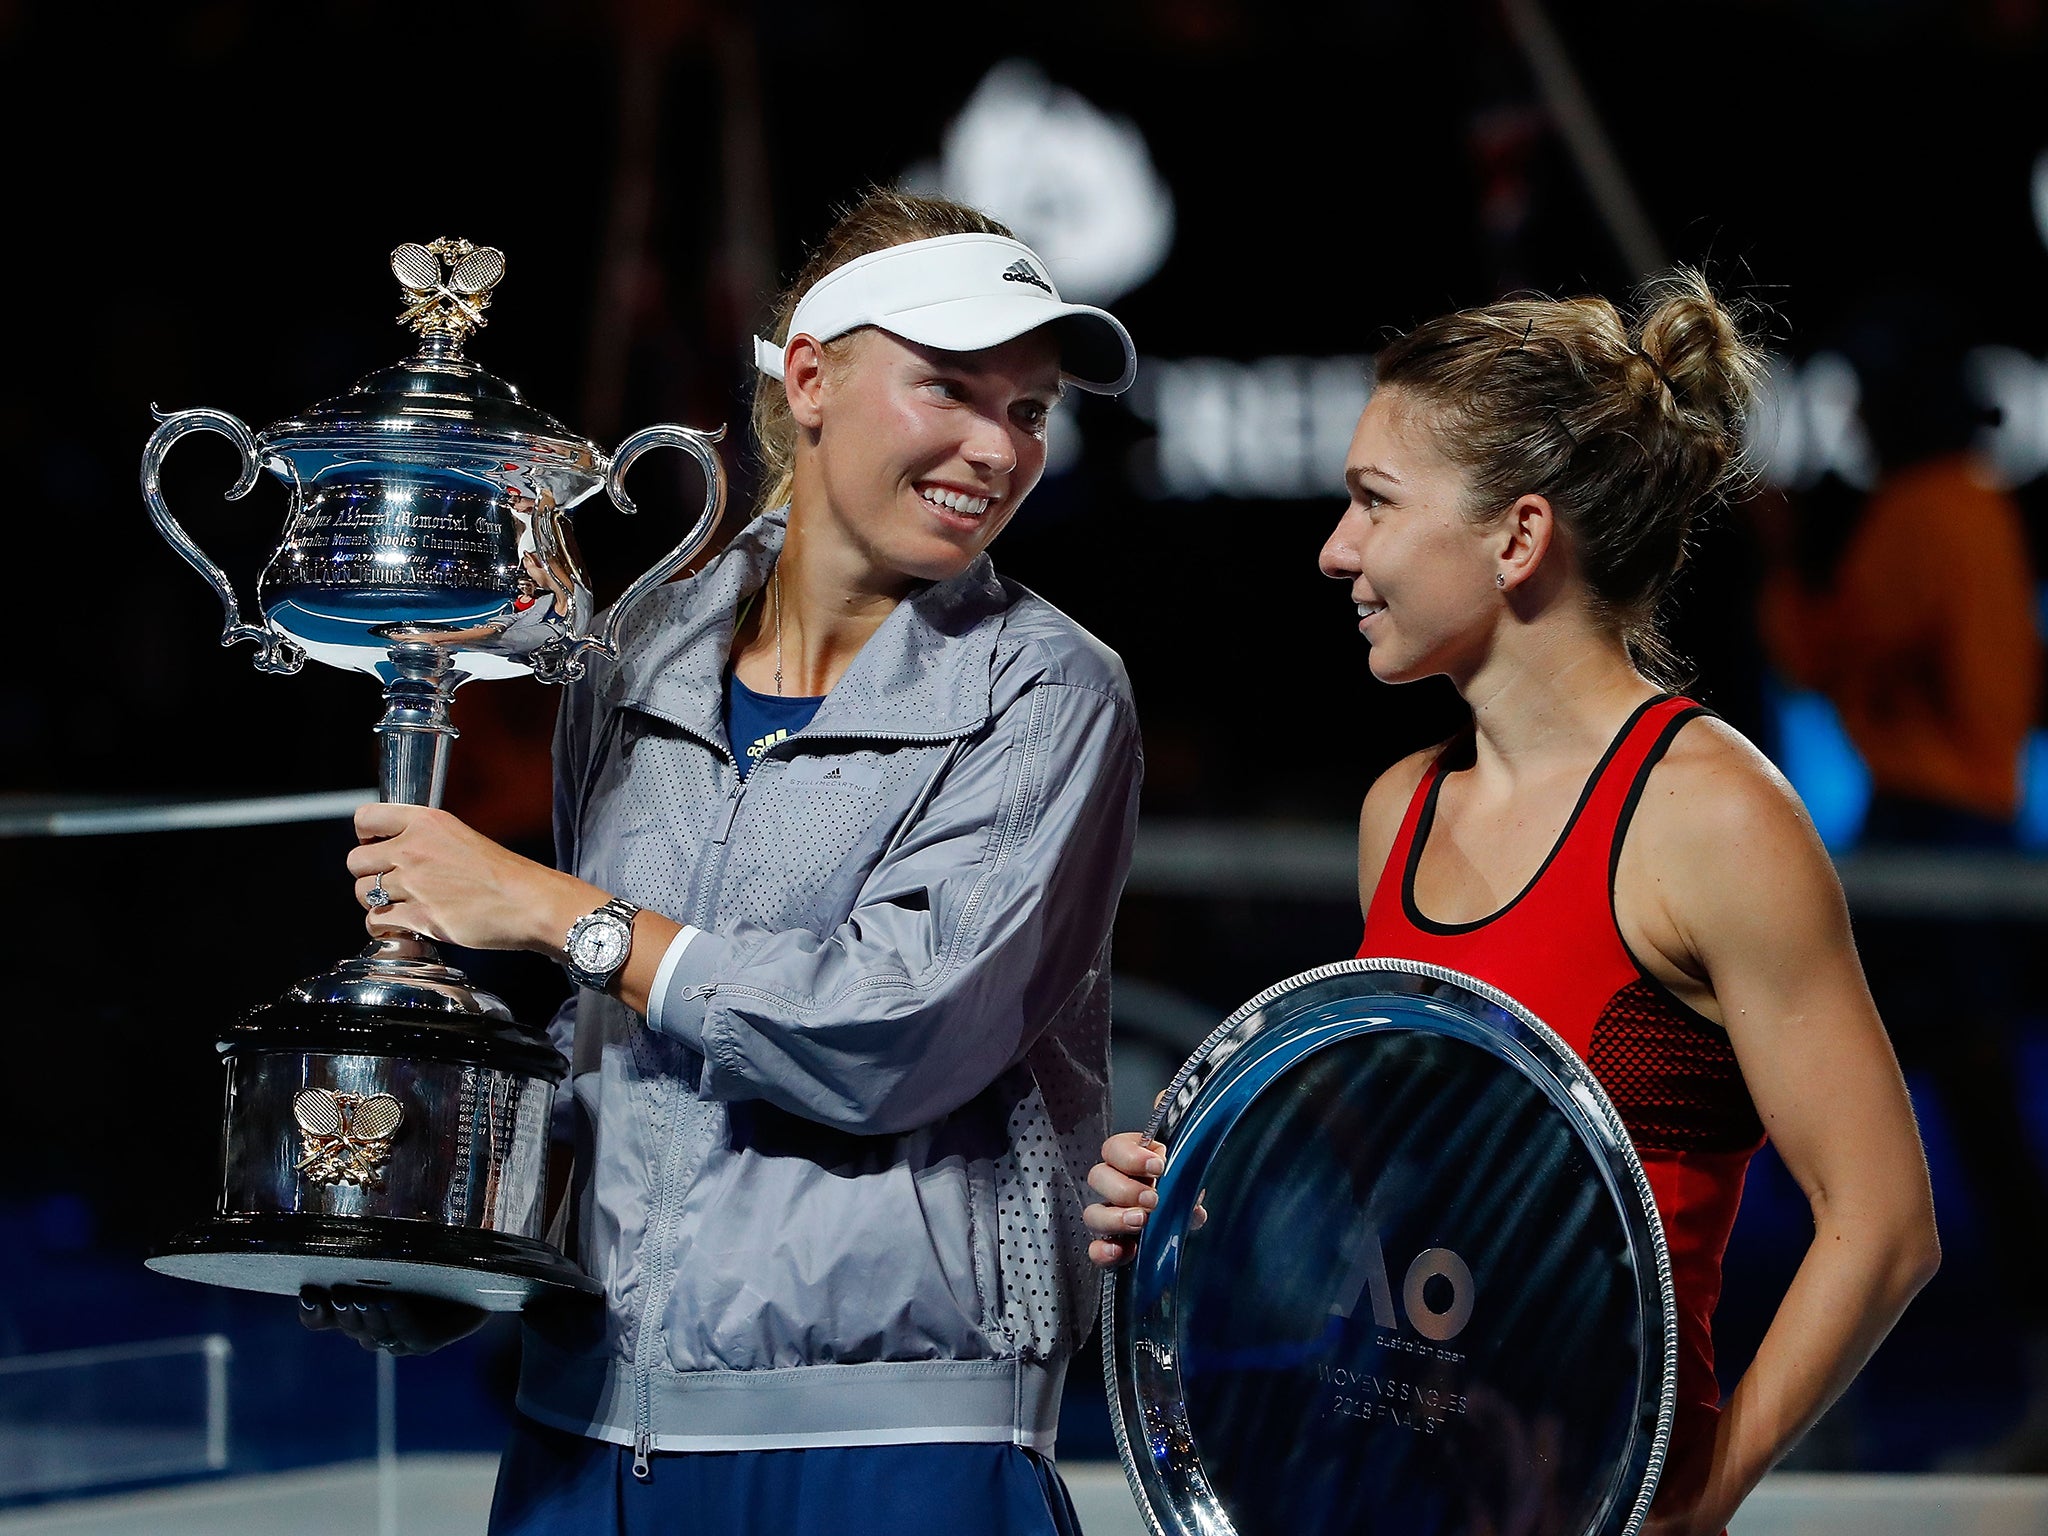 Caroline Wozniacki beat Simona Halep in the women's final